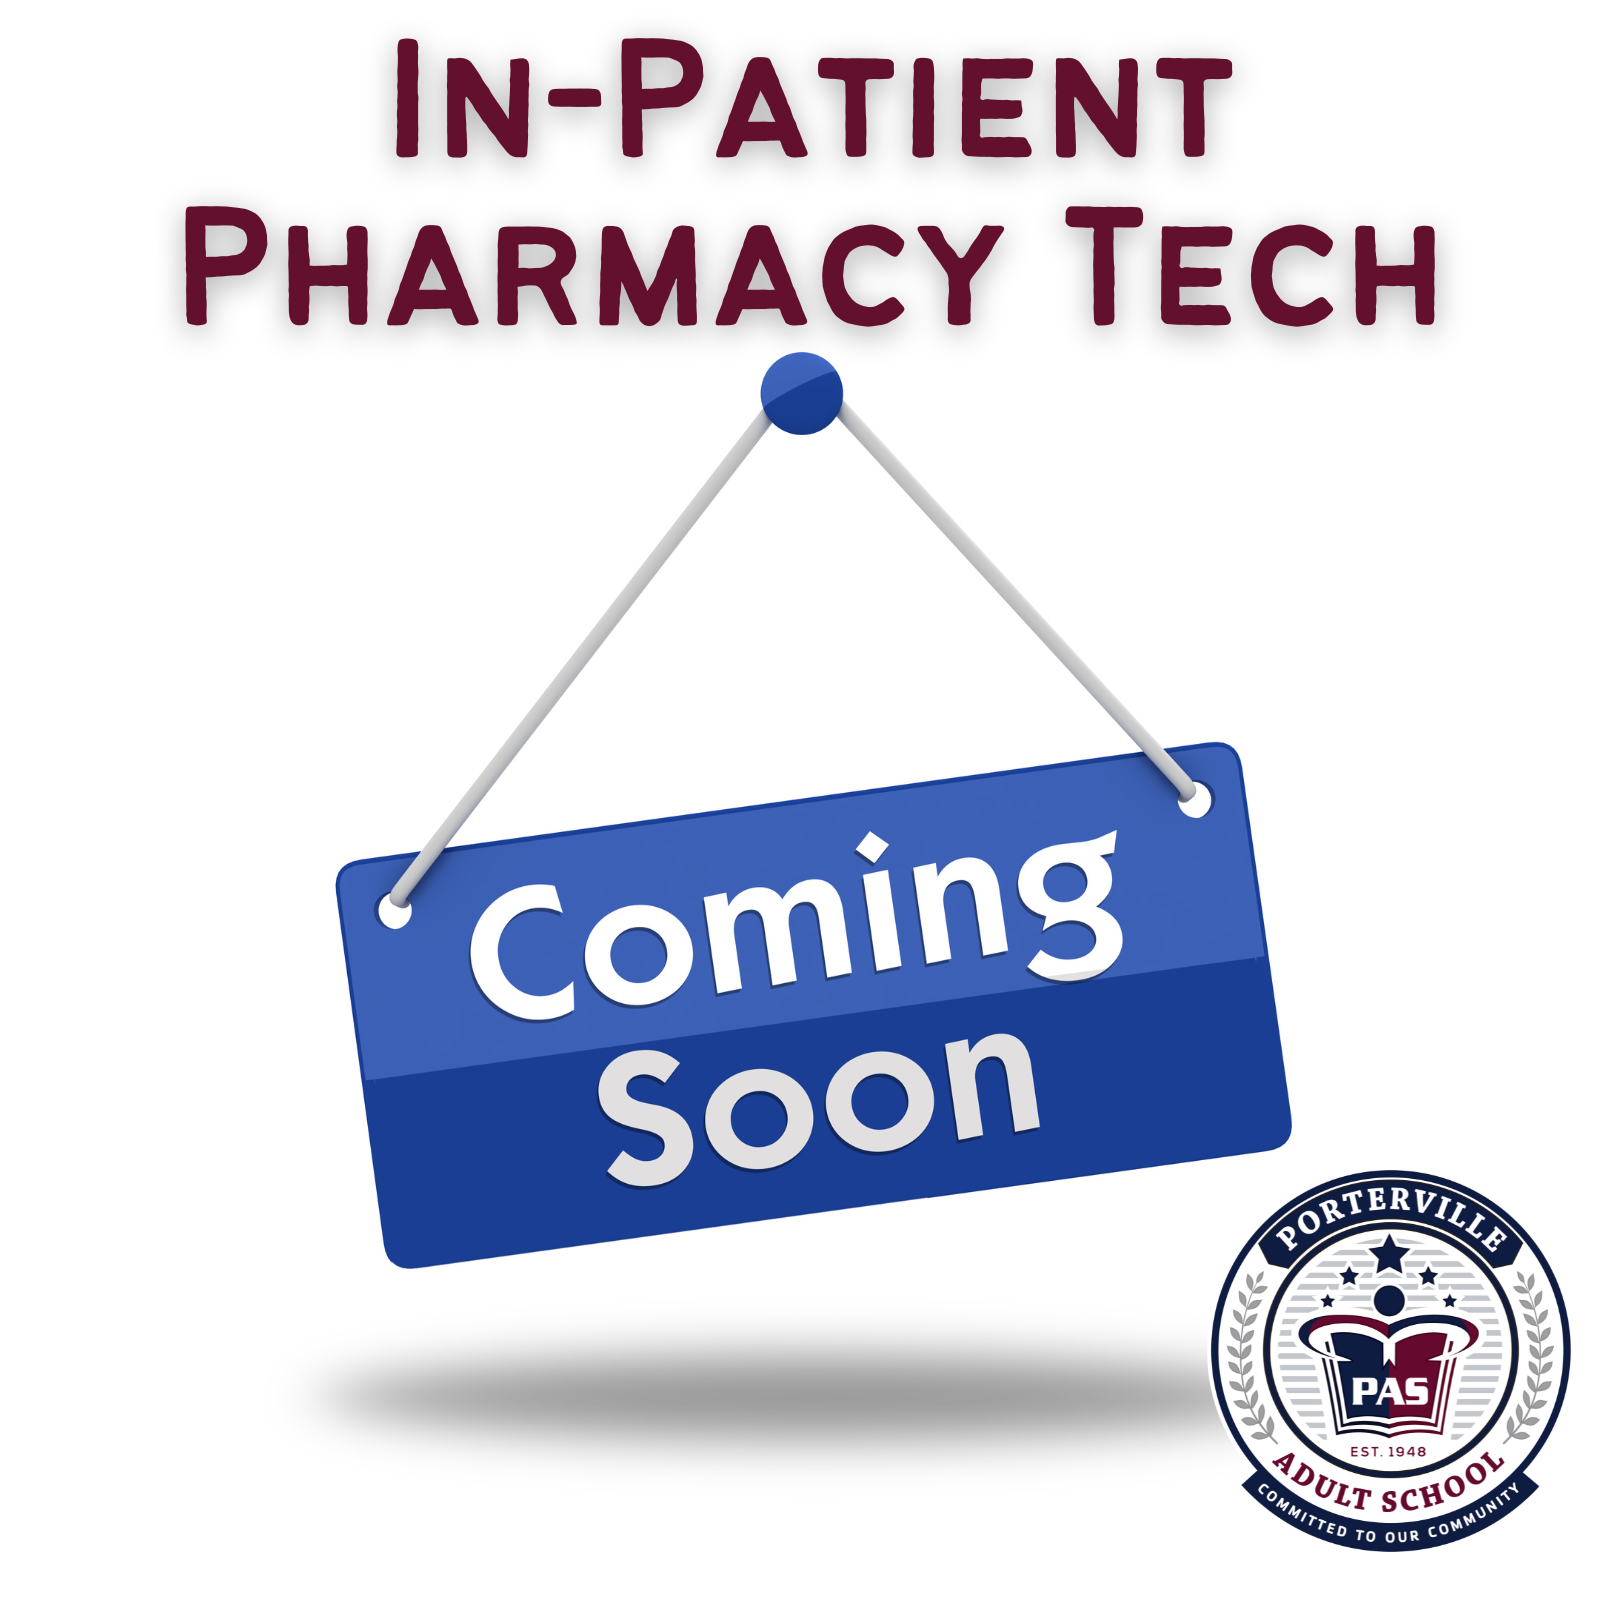 In-patient Pharmacy Tech